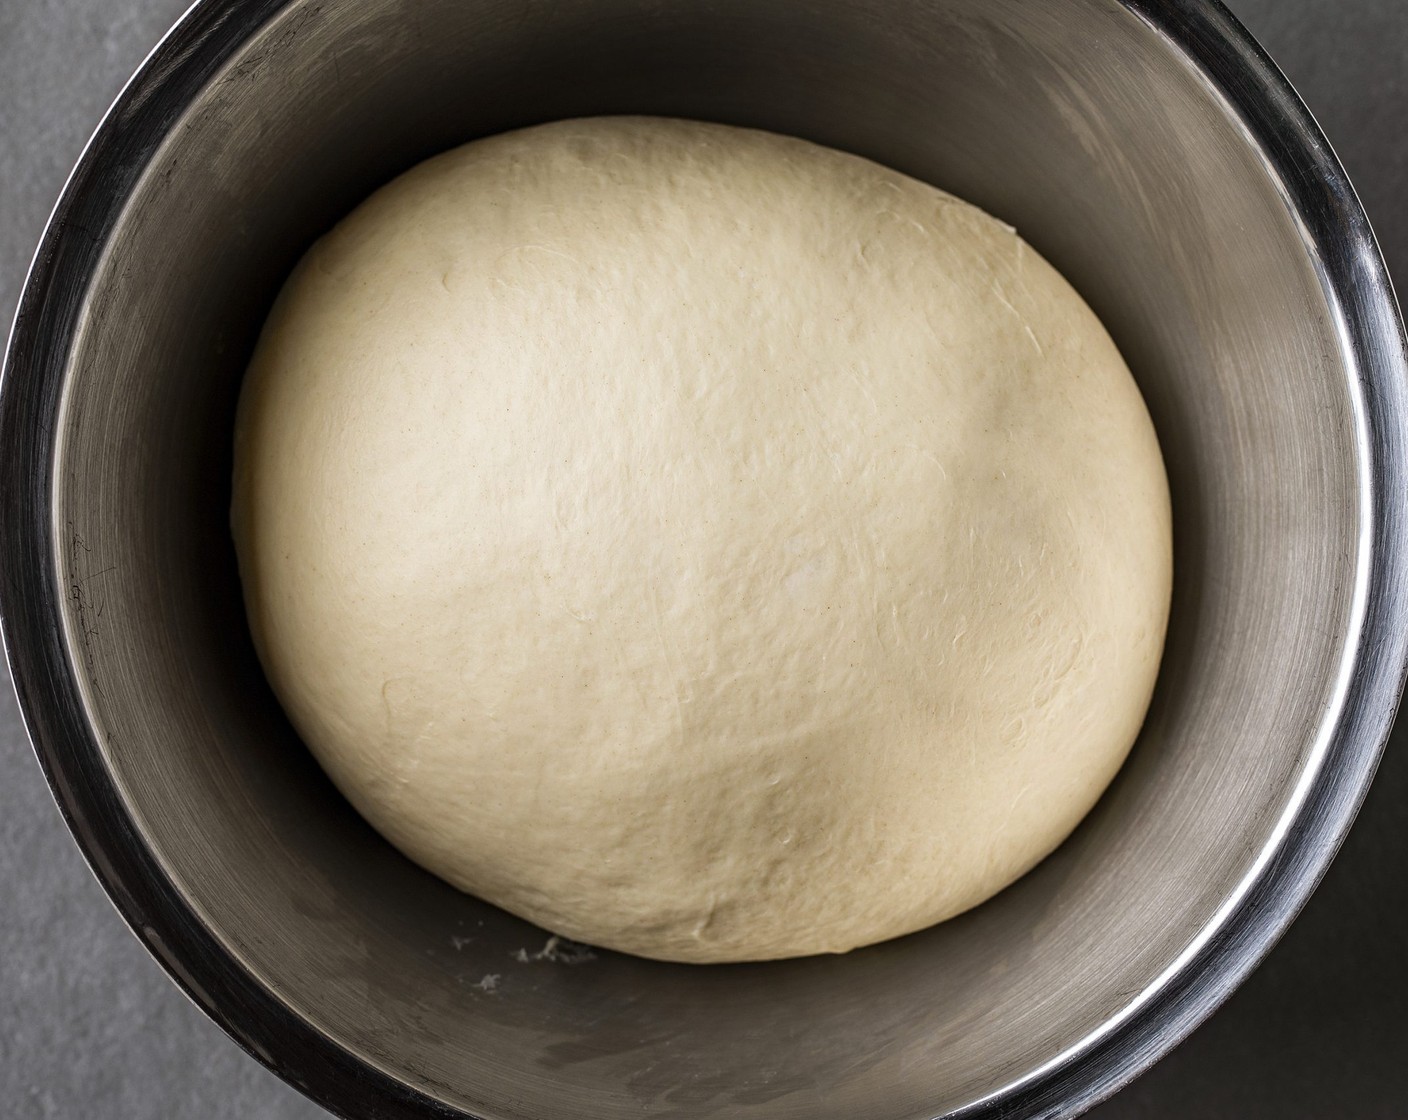 Schritt 1 Alle Zutaten bereitstellen. Für den Teig Mehl (500 g), Salz (2 Teelöffel) und Zucker (2 Teelöffel) mischen, eine Mulde formen. Butter (75 g) in kleinen Stücken in die Mulde geben. Die frische Hefe (1/2 Würfel) mit Milch (10 Teelöffel) auflösen, restliche Milch (225 ml) in die Mulde giessen. Alles zu einem Teig zusammenfügen. Teig kneten, bis er weich und elastisch ist, mindestens 10 Minuten. (Beim Aufschneiden mit einem Messer sollen kleine Luftblasen sichtbar sein.) Teig in der Schüssel unter einem aufgeschnittenen Plastikbeutel bei Zimmertemperatur auf das Doppelte aufgehen lassen. Den aufgegangenen Teig nicht mehr kneten.